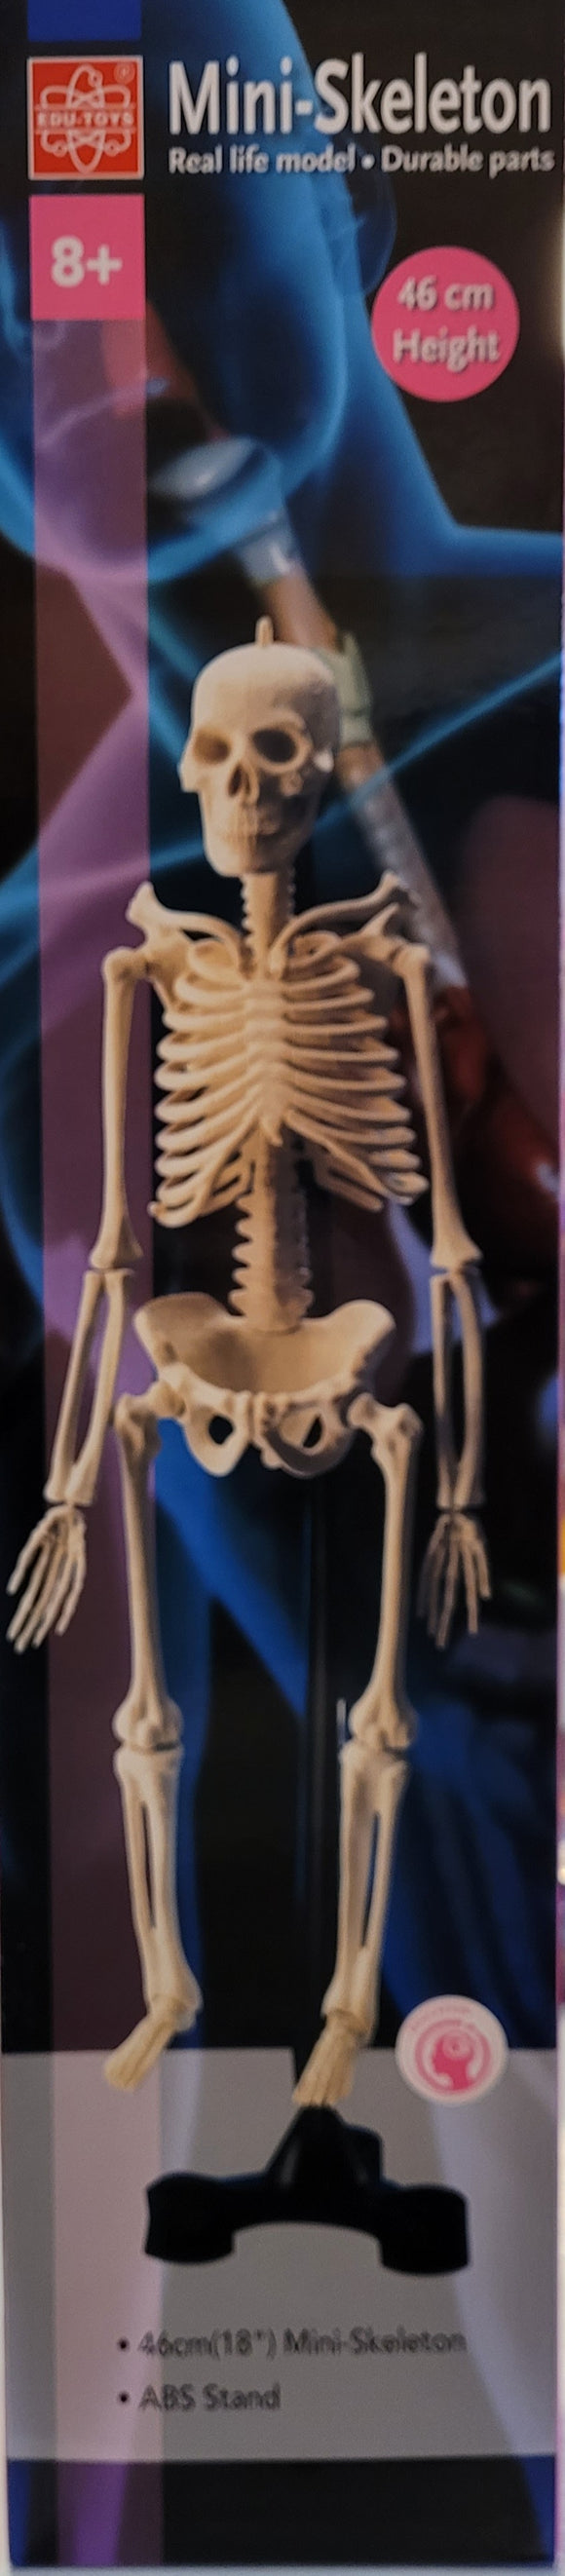 Mini- Skeleton